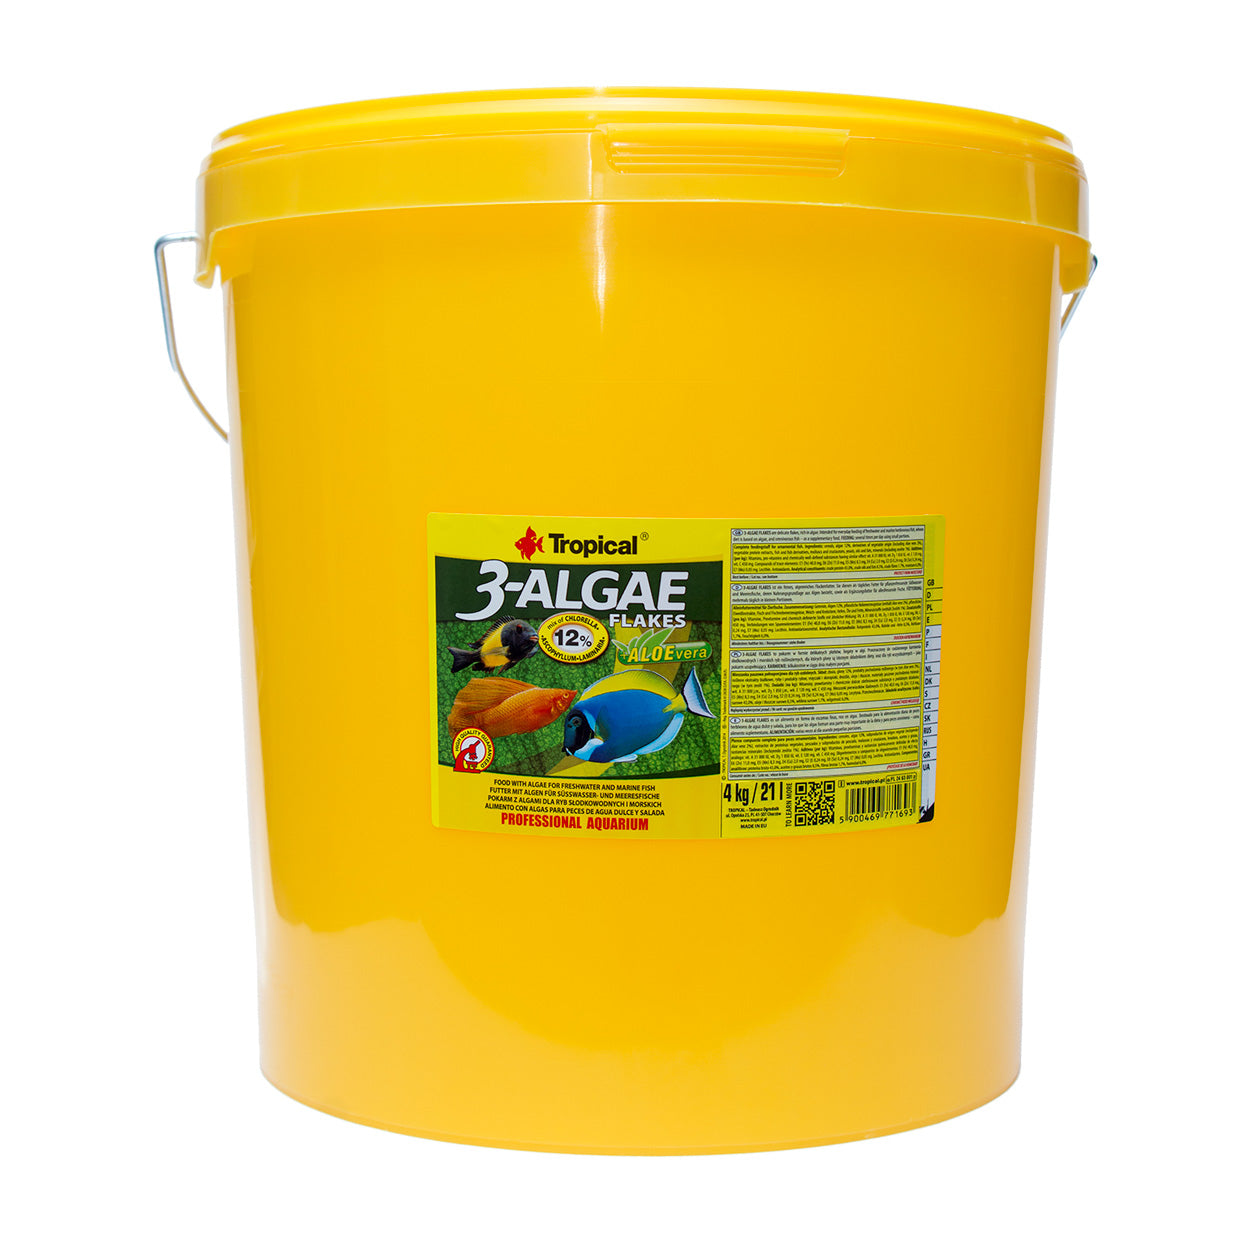 3-Algae Flakes, Tropical